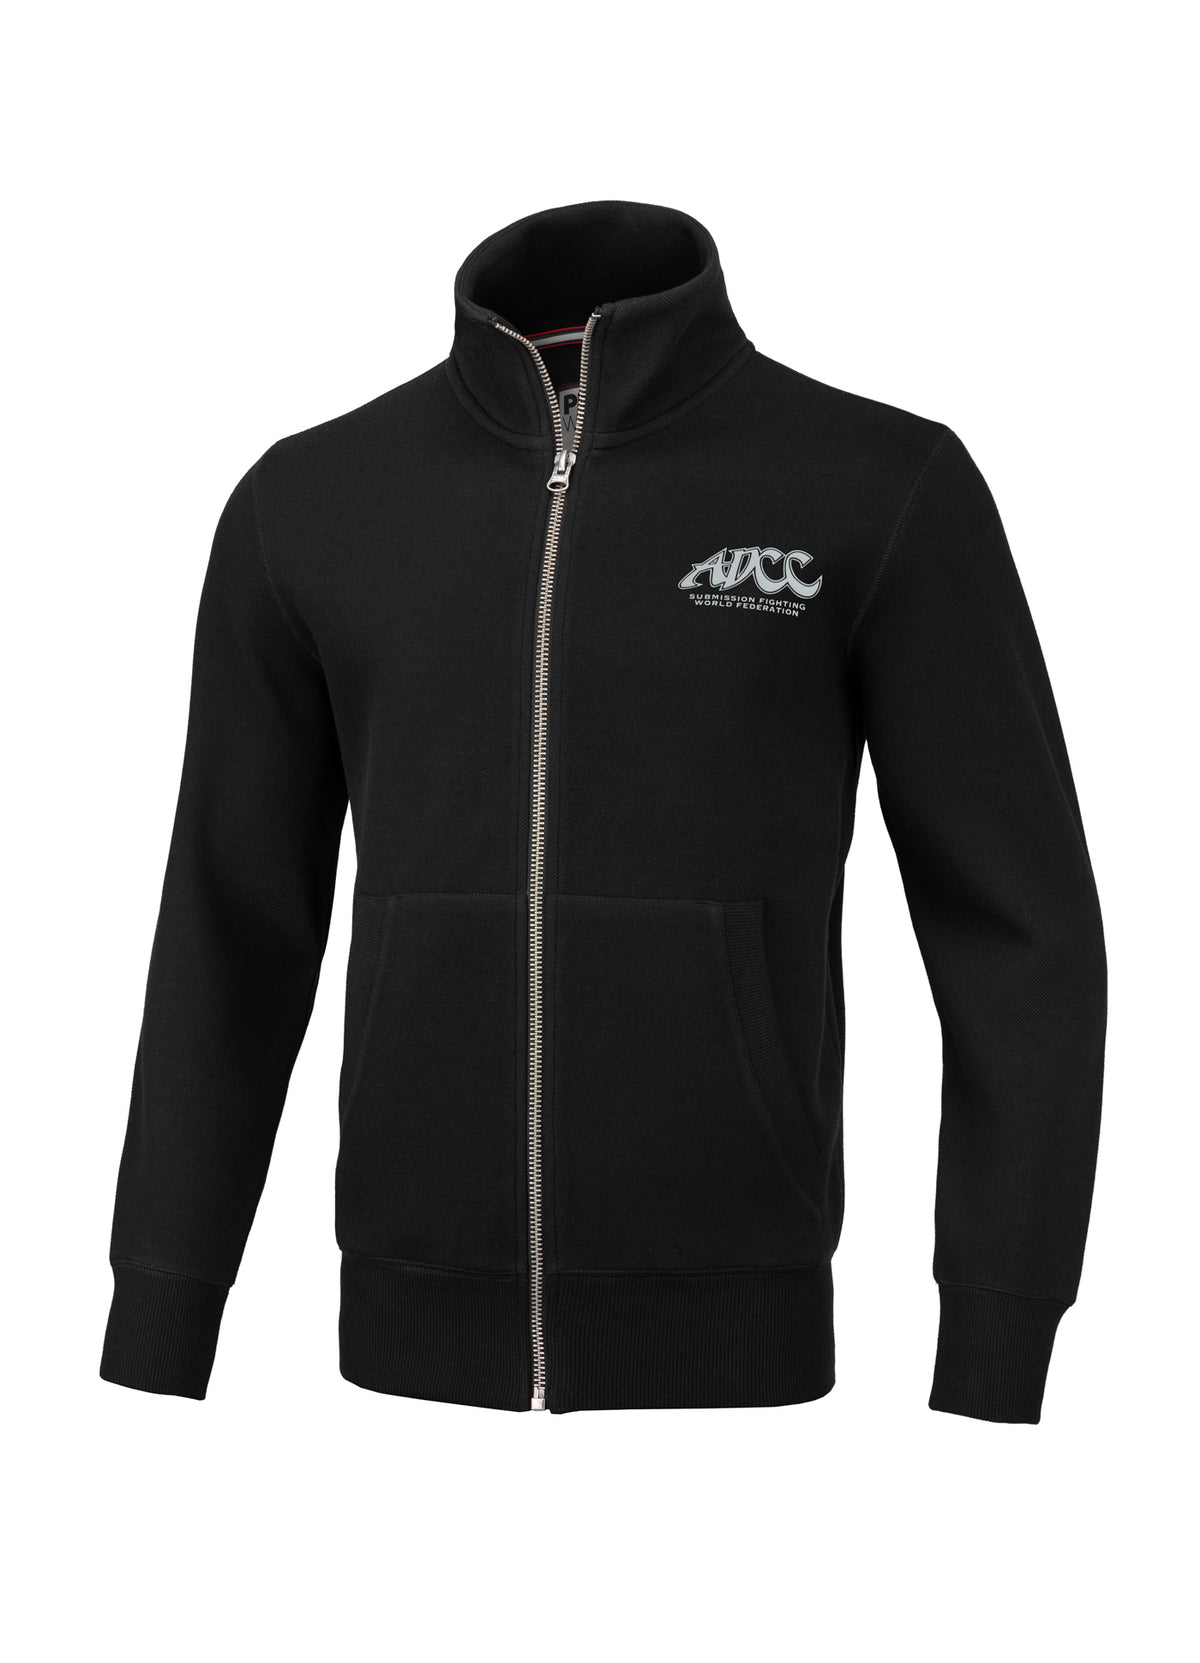 ADCC Premium Pique Black Sweatjacket